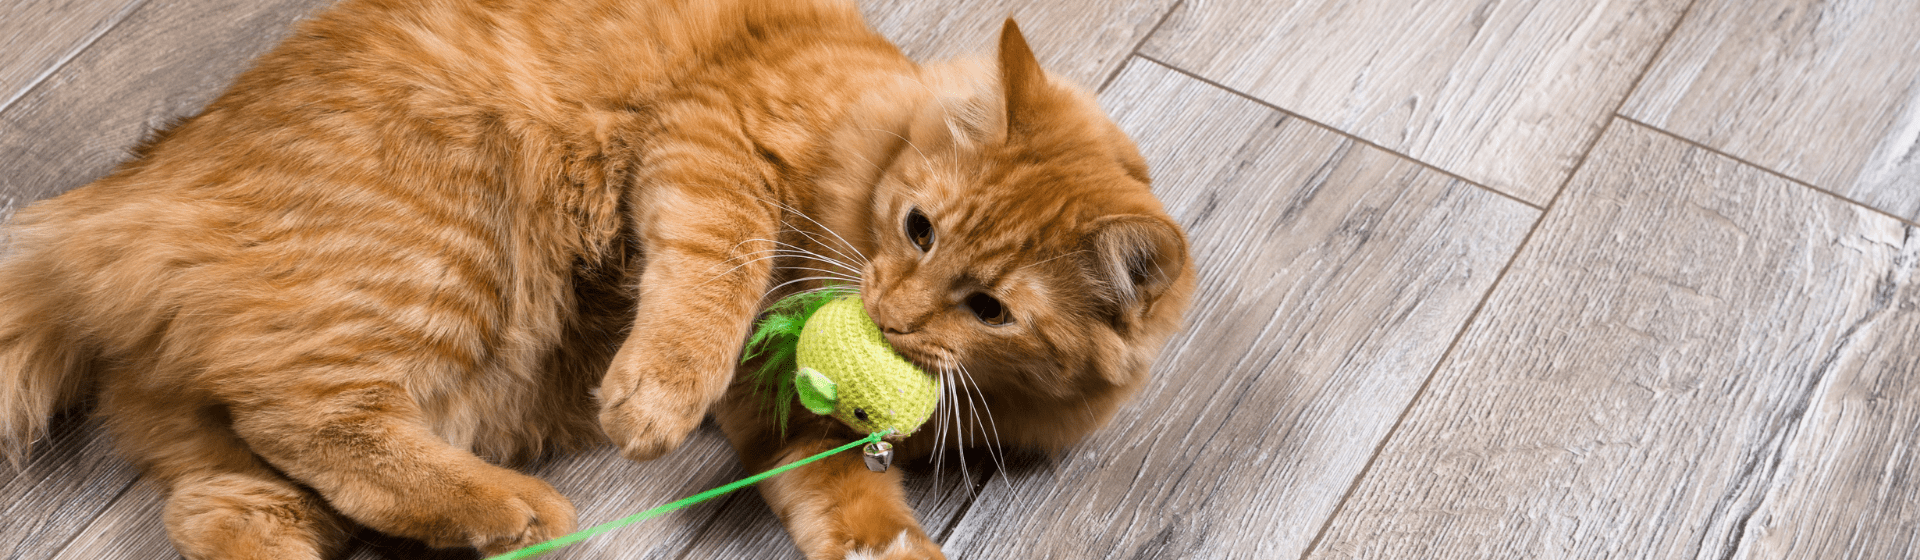 Brinquedo para gato: qual é o melhor modelo?